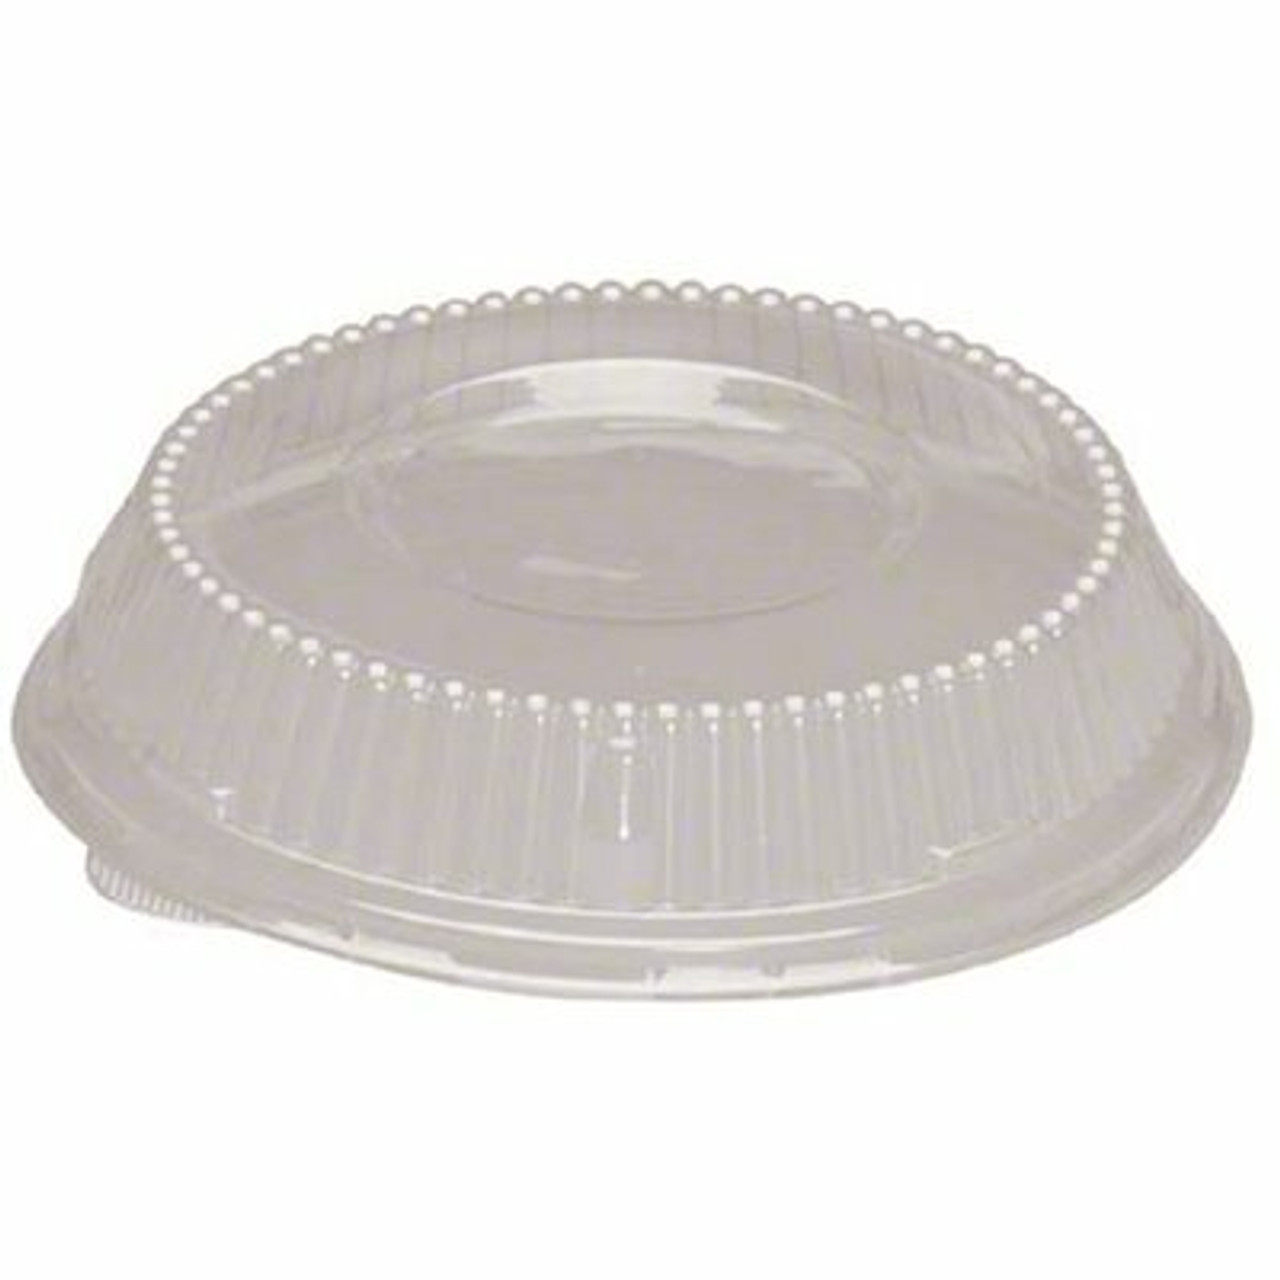 Genpak Lid For 24 Oz./32 Oz. Clear Plastic Bowl (200 Per Case)